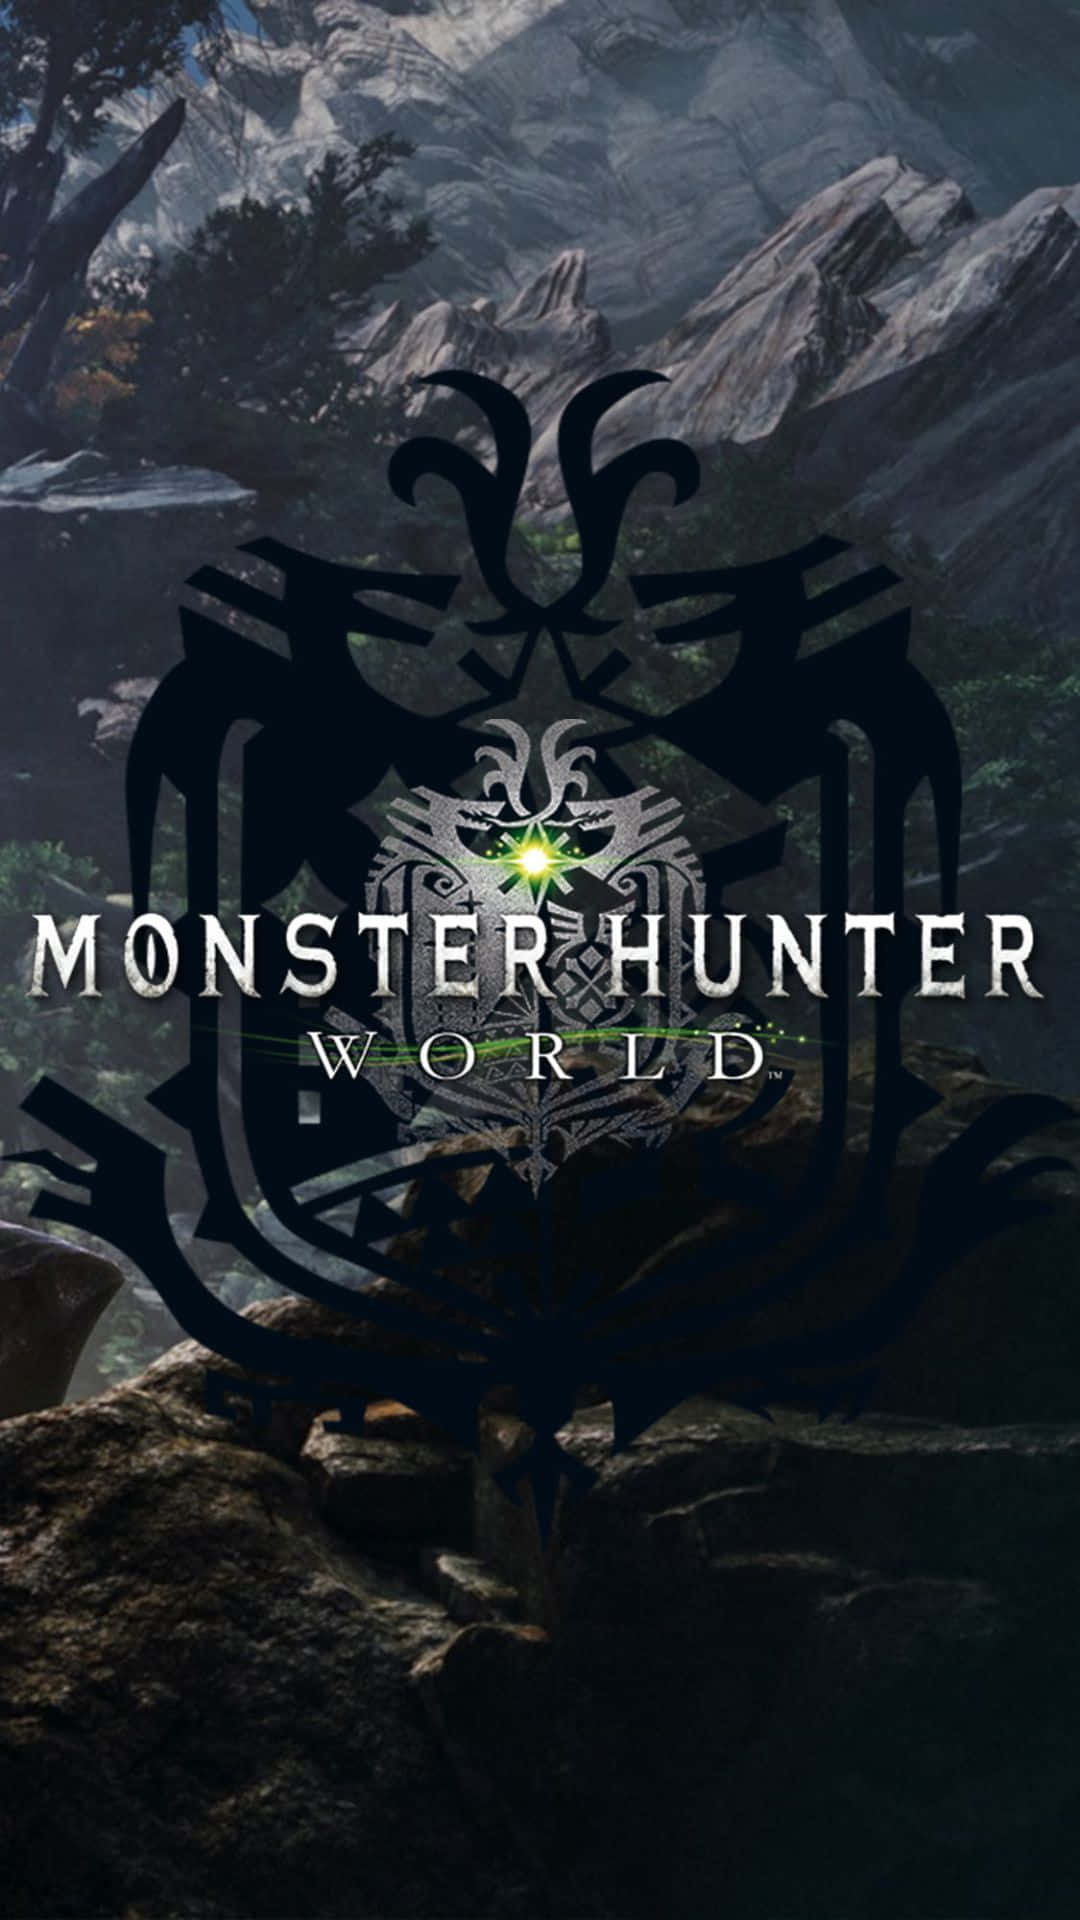 Embárcateen Una Aventura Inolvidable Y Única Con Android Monster Hunter World.